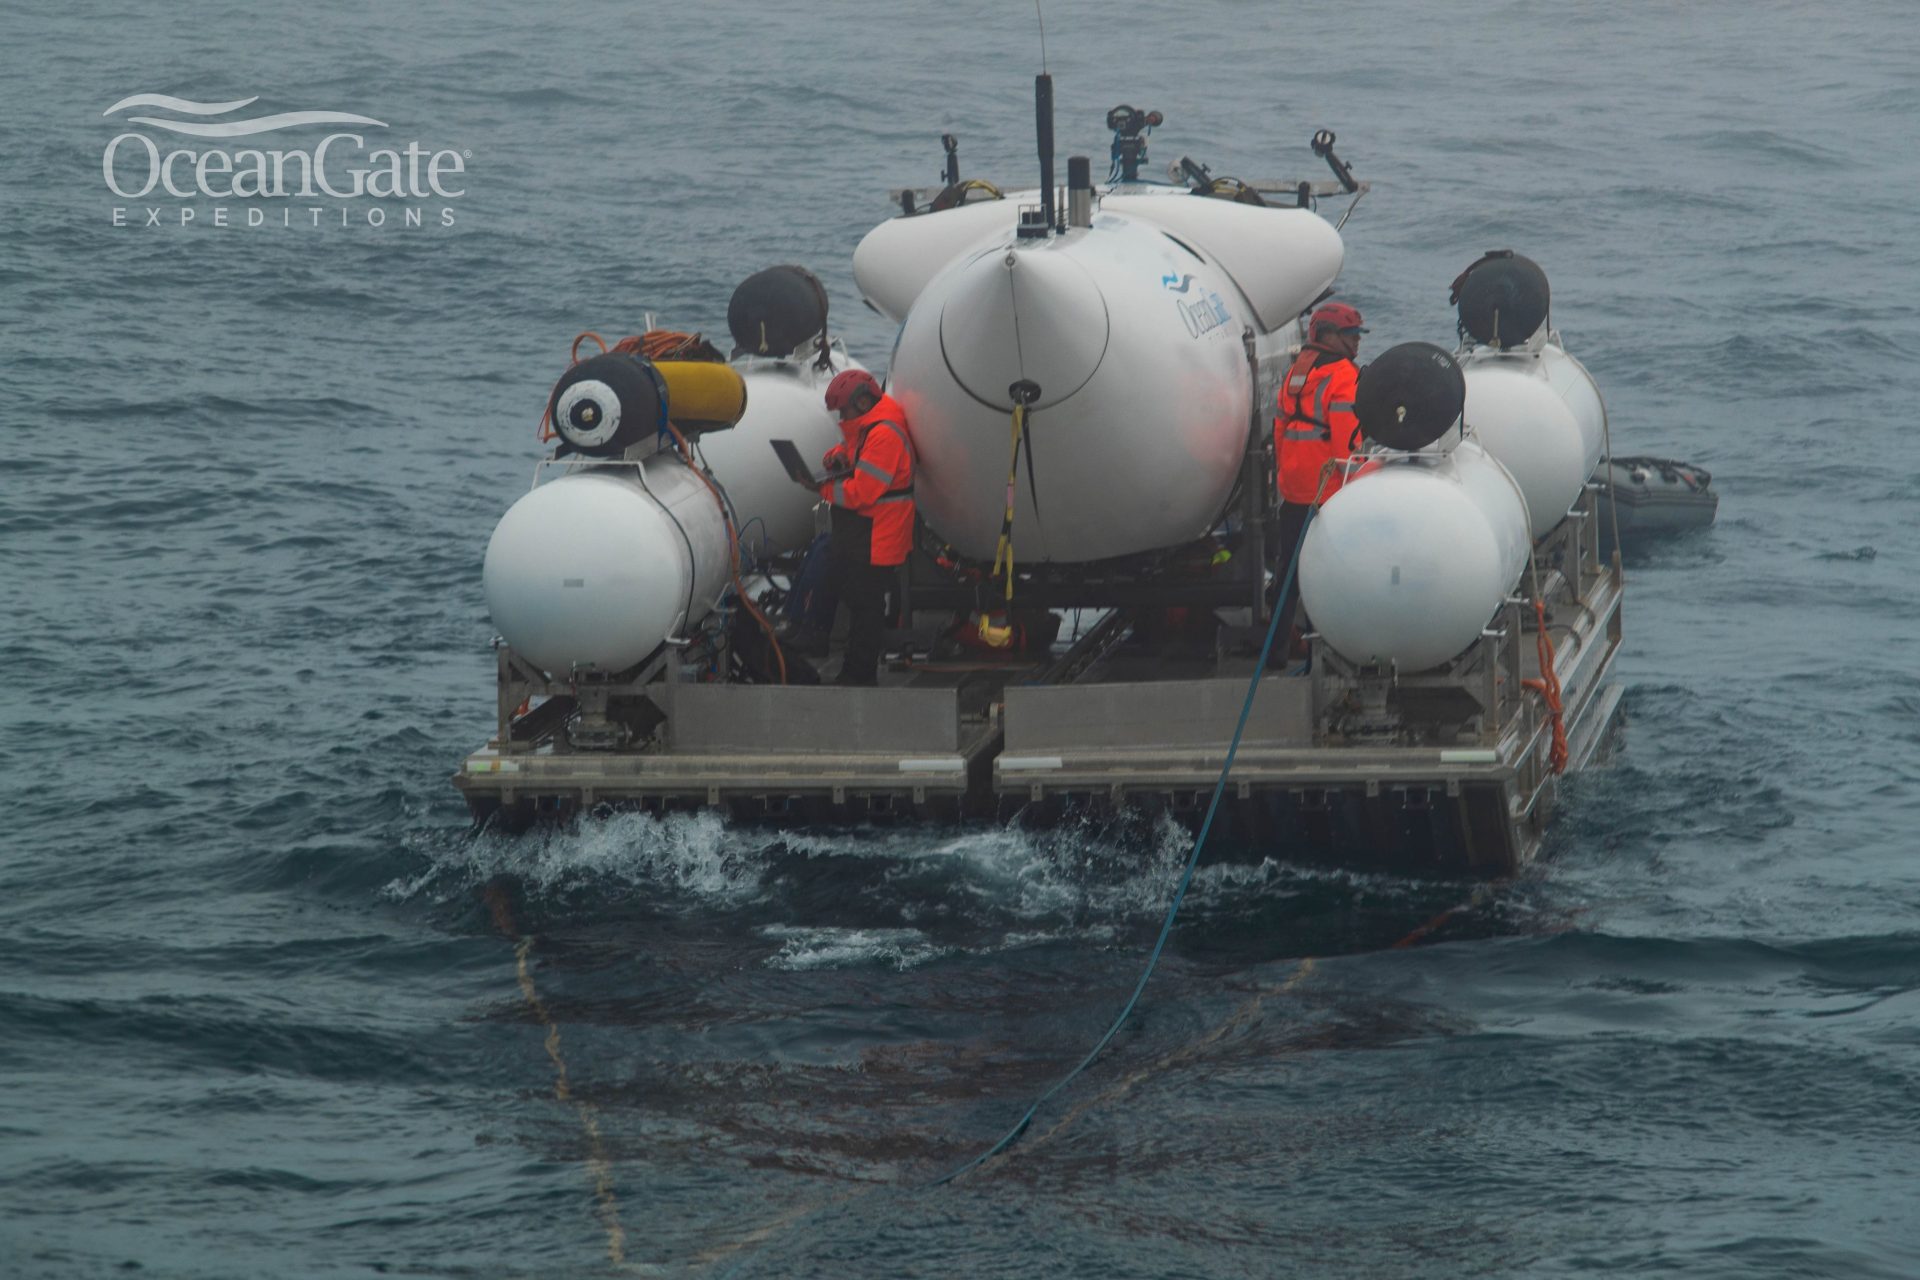 Submarino desaparecido no Oceano Atlântico - Foto: Reprodução/Twitter@OceanGateExpeds